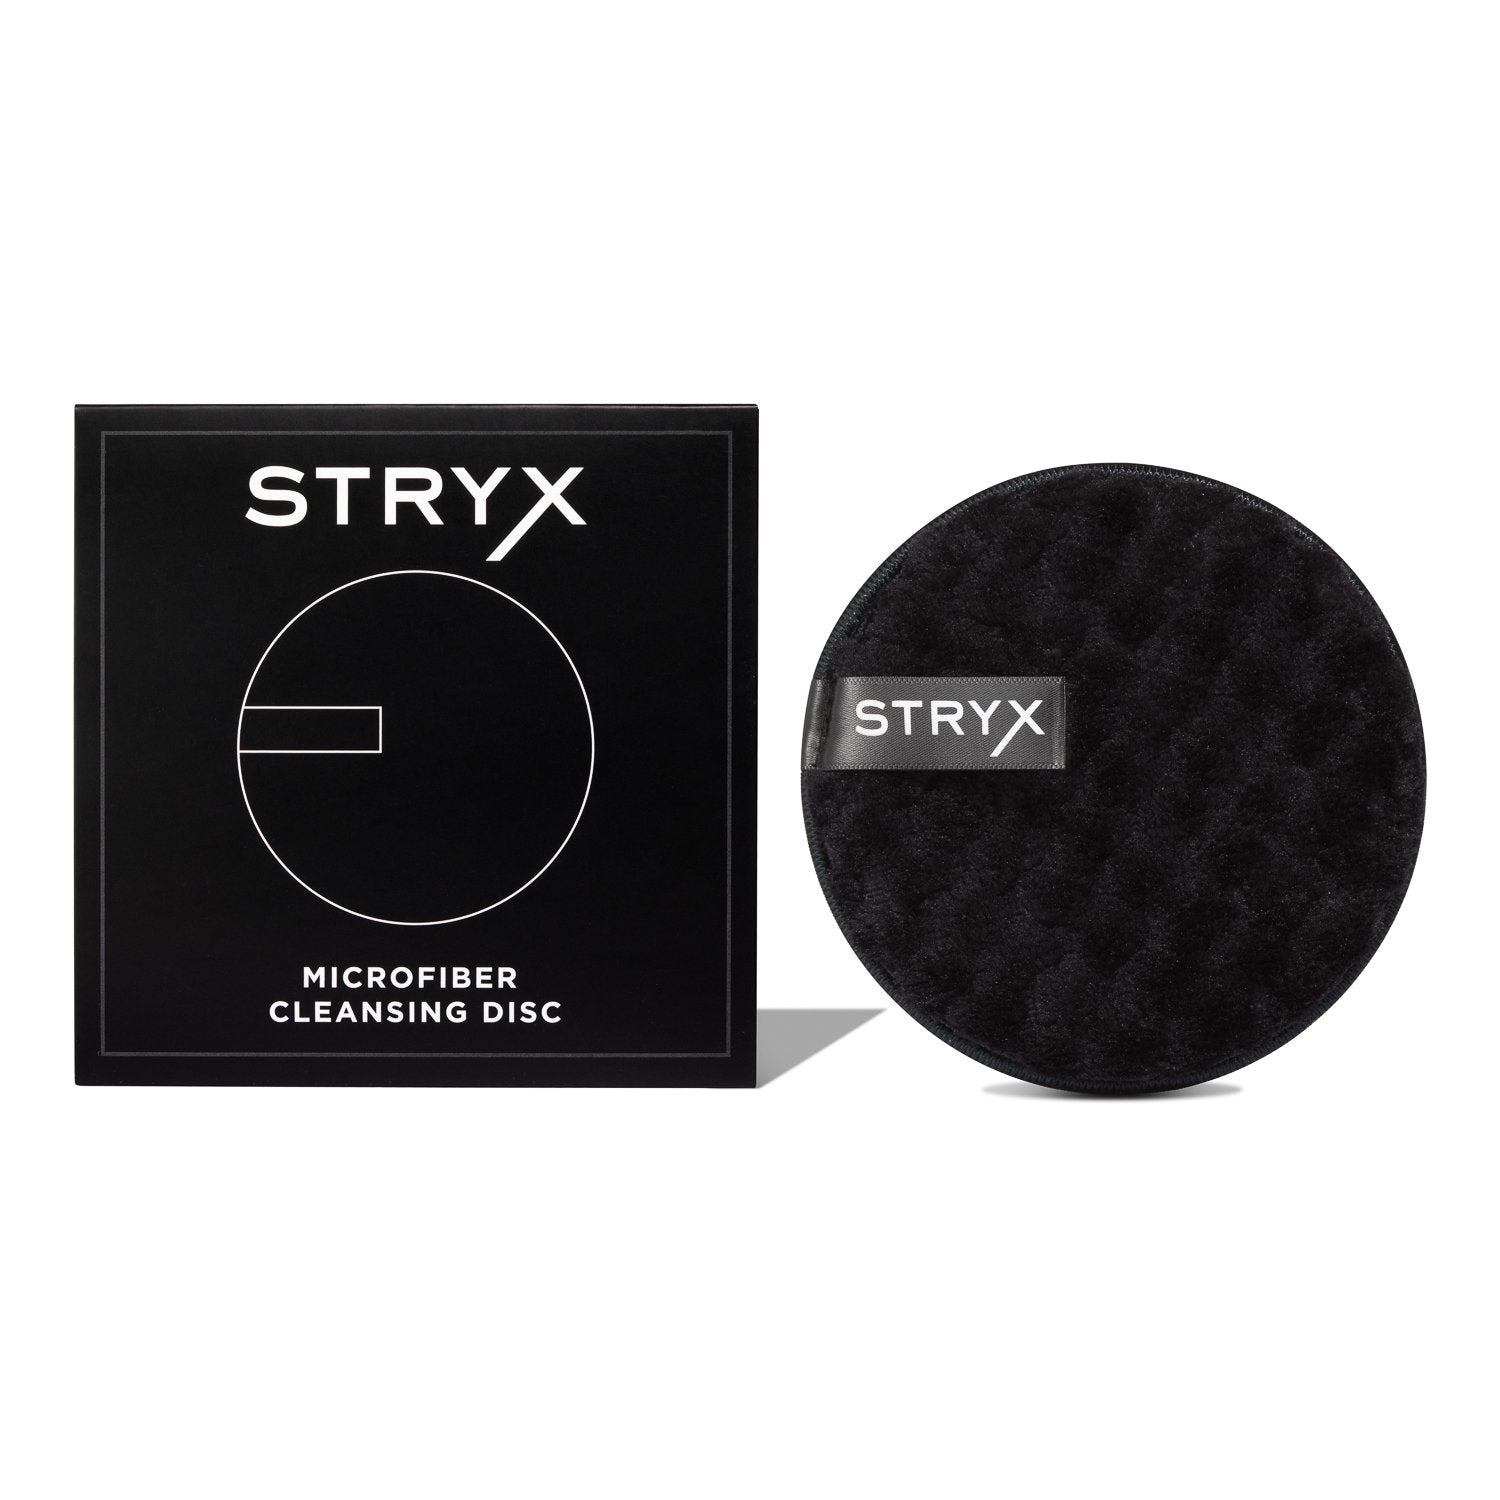 Bilde av Stryx Microfiber Cleansing Disc